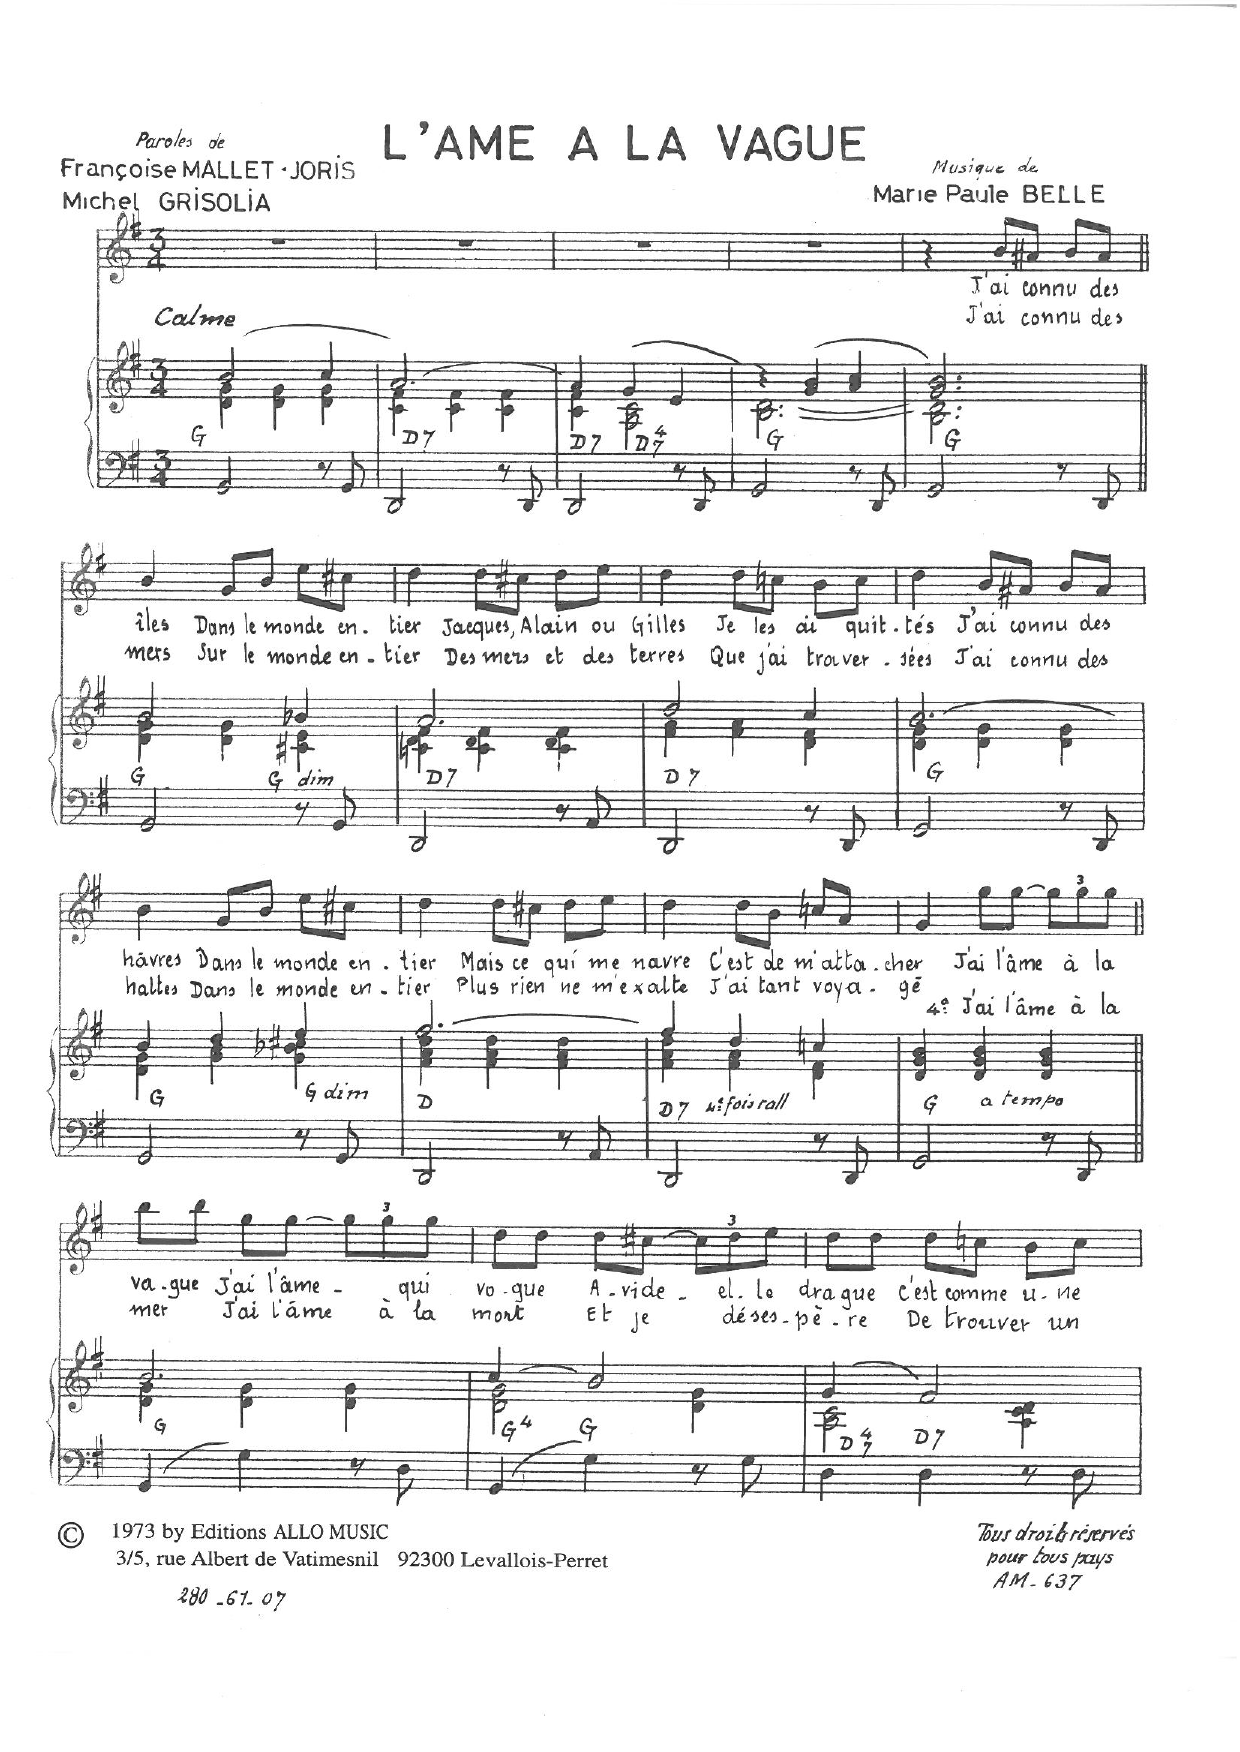 Michel Grisolia, Françoise Mallet-Joris and Marie Paule Belle L'ame A La Vague Sheet Music Notes & Chords for Piano & Vocal - Download or Print PDF